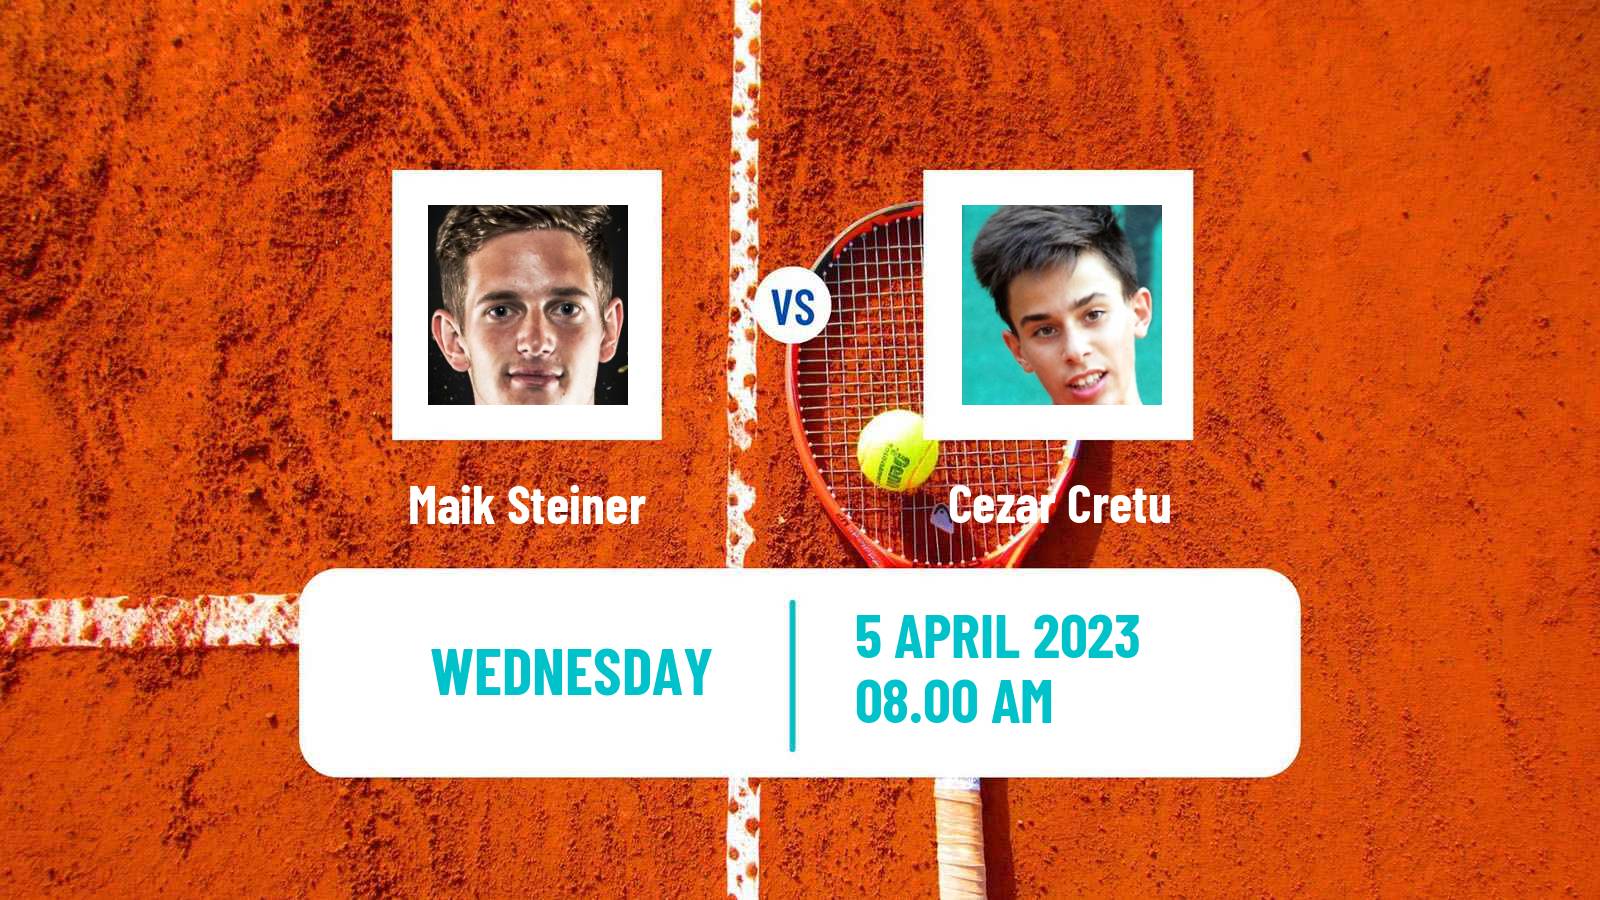 Tennis ITF Tournaments Maik Steiner - Cezar Cretu